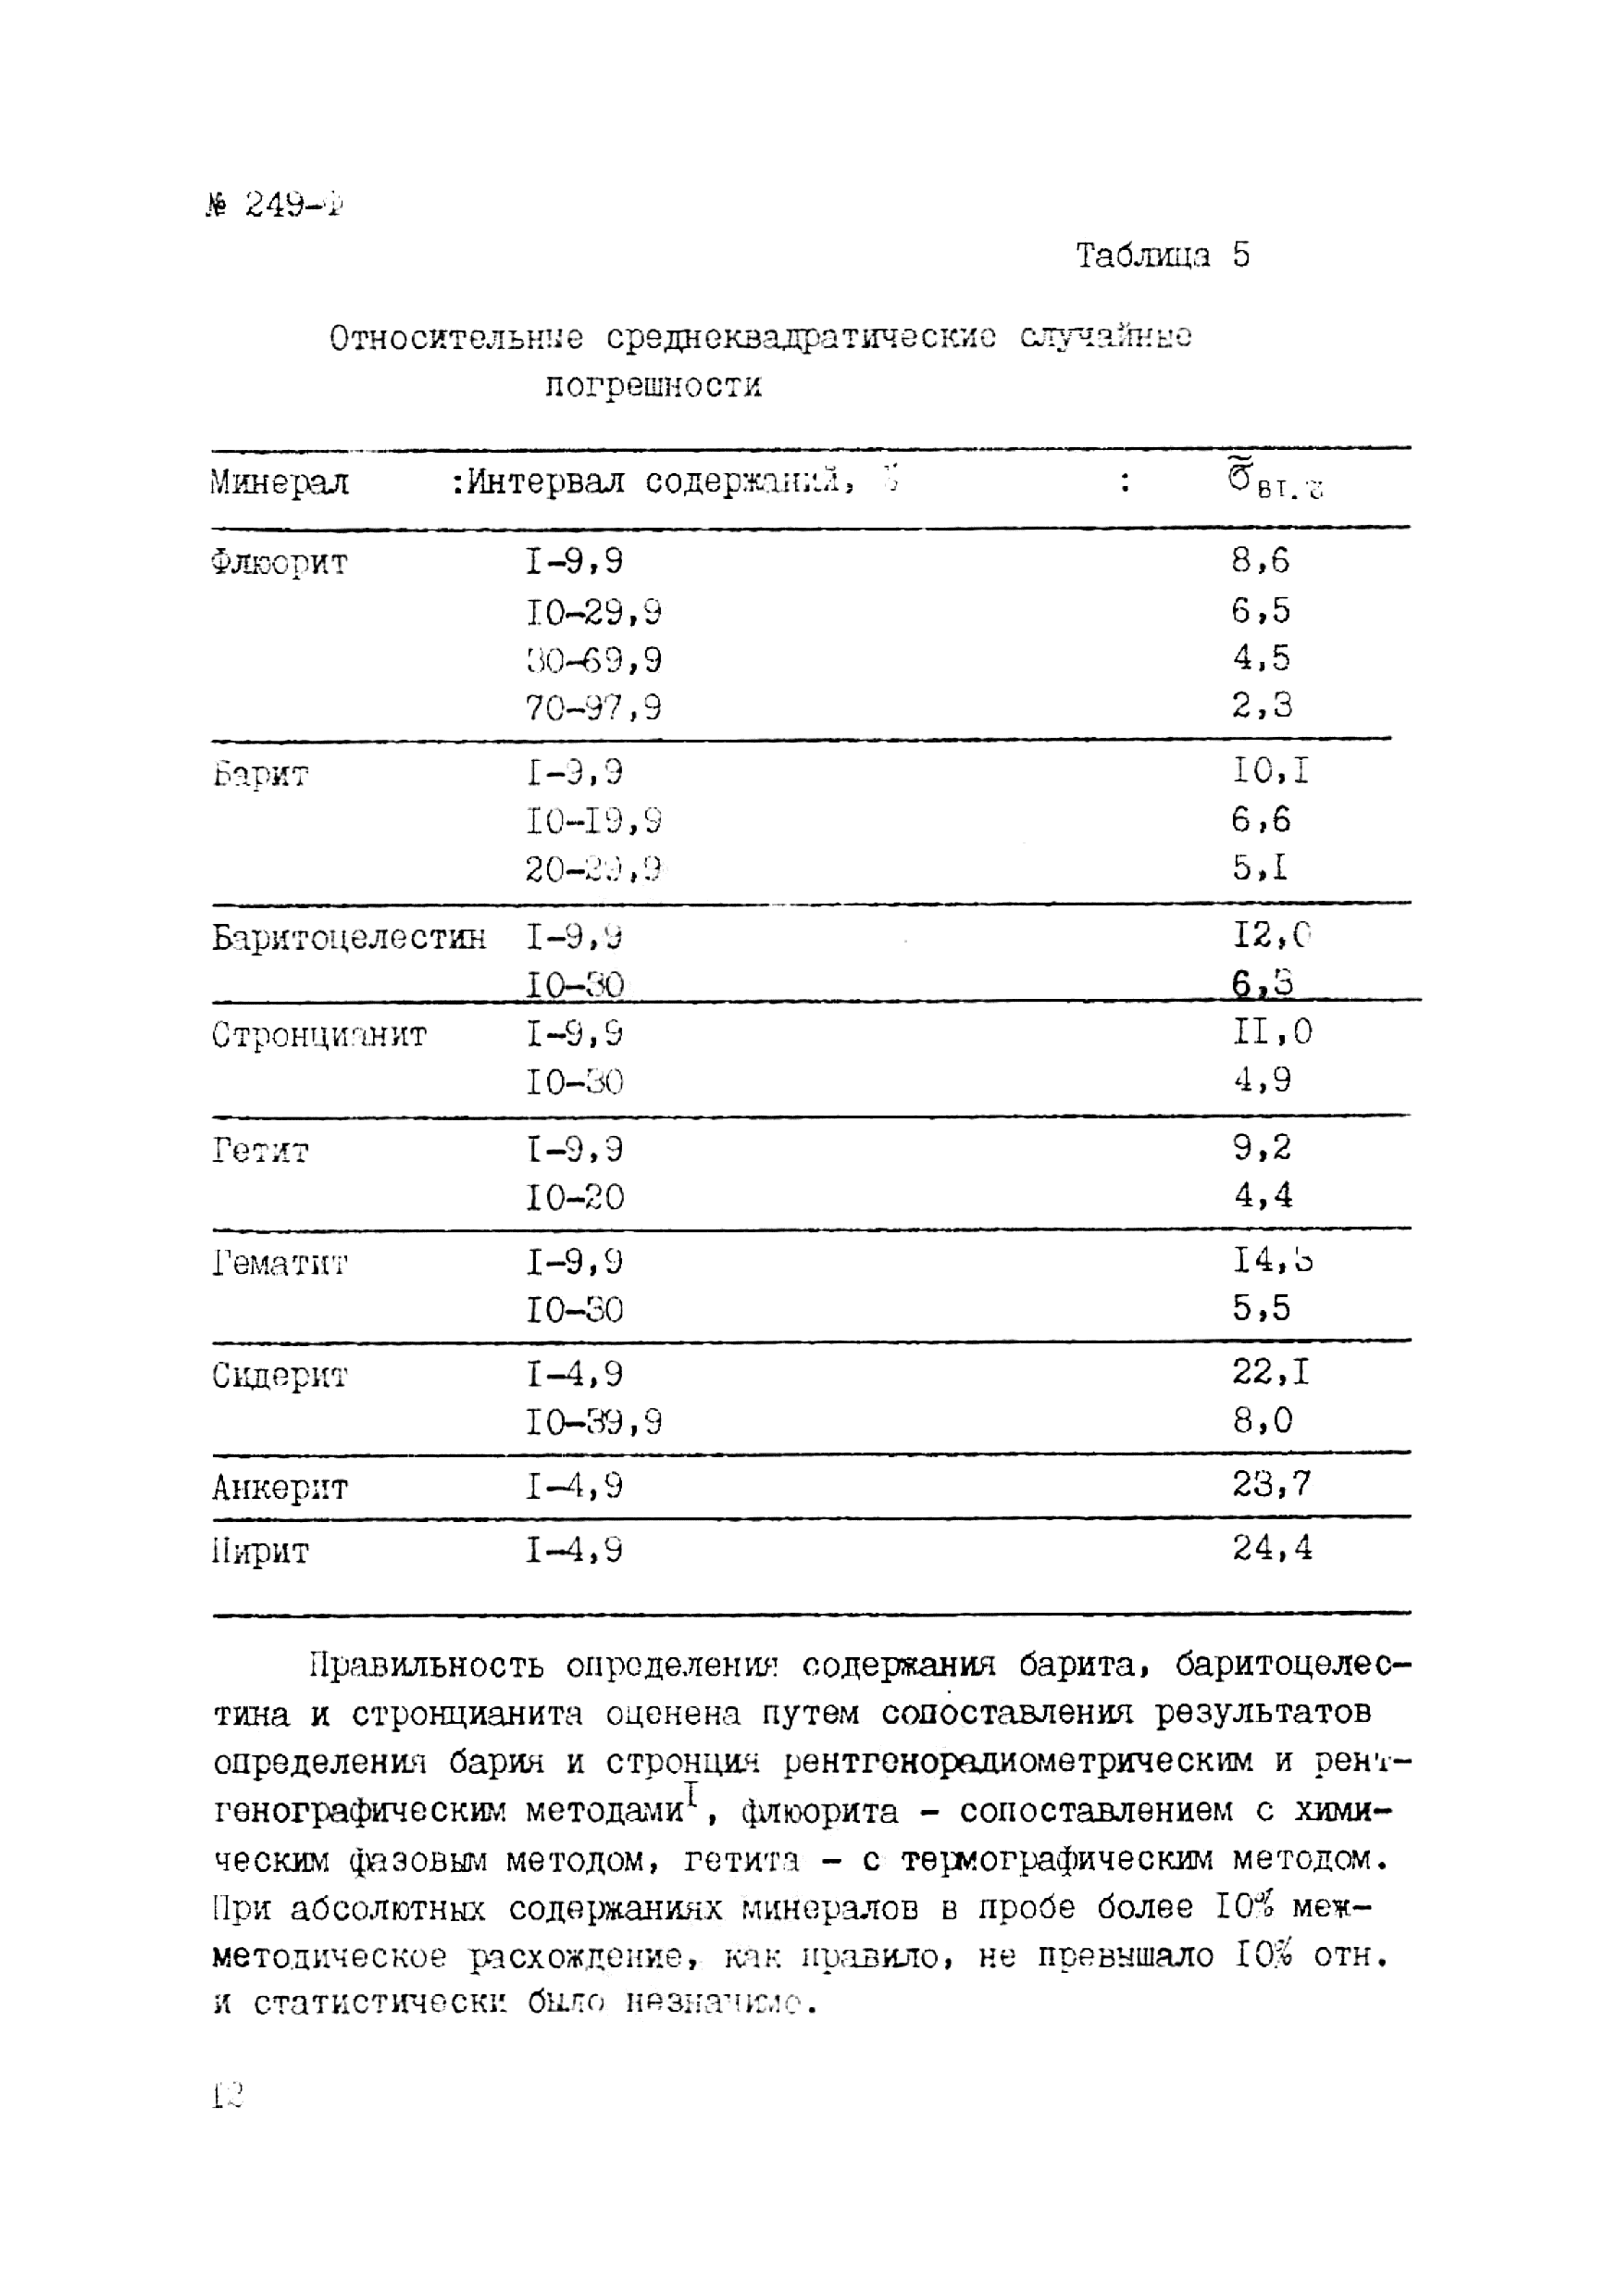 Инструкция НСАМ 249-Ф